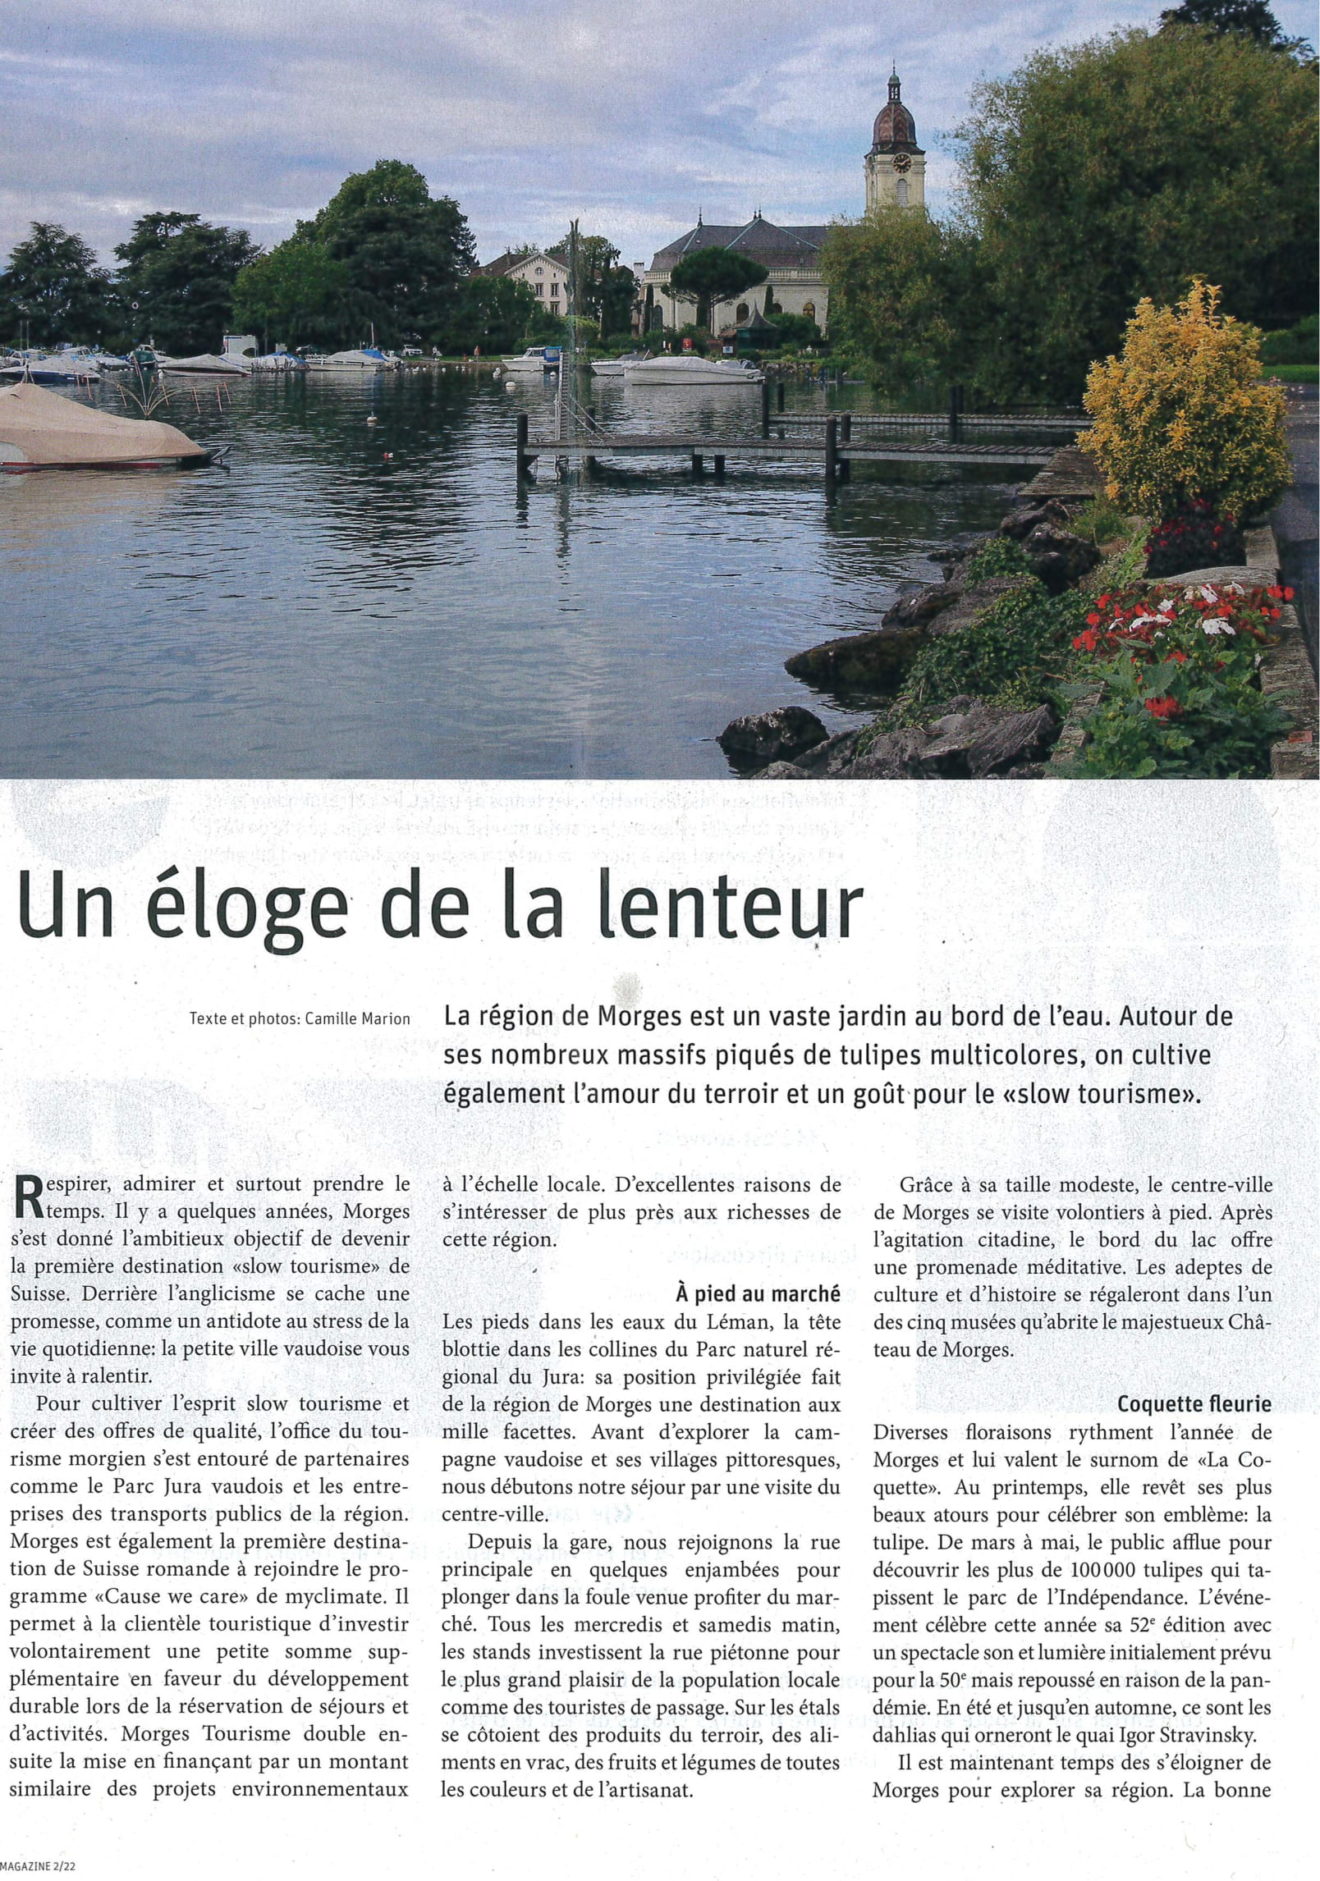 District de Morges - Un éloge de la lenteur - ATE Magazine 02_22-1